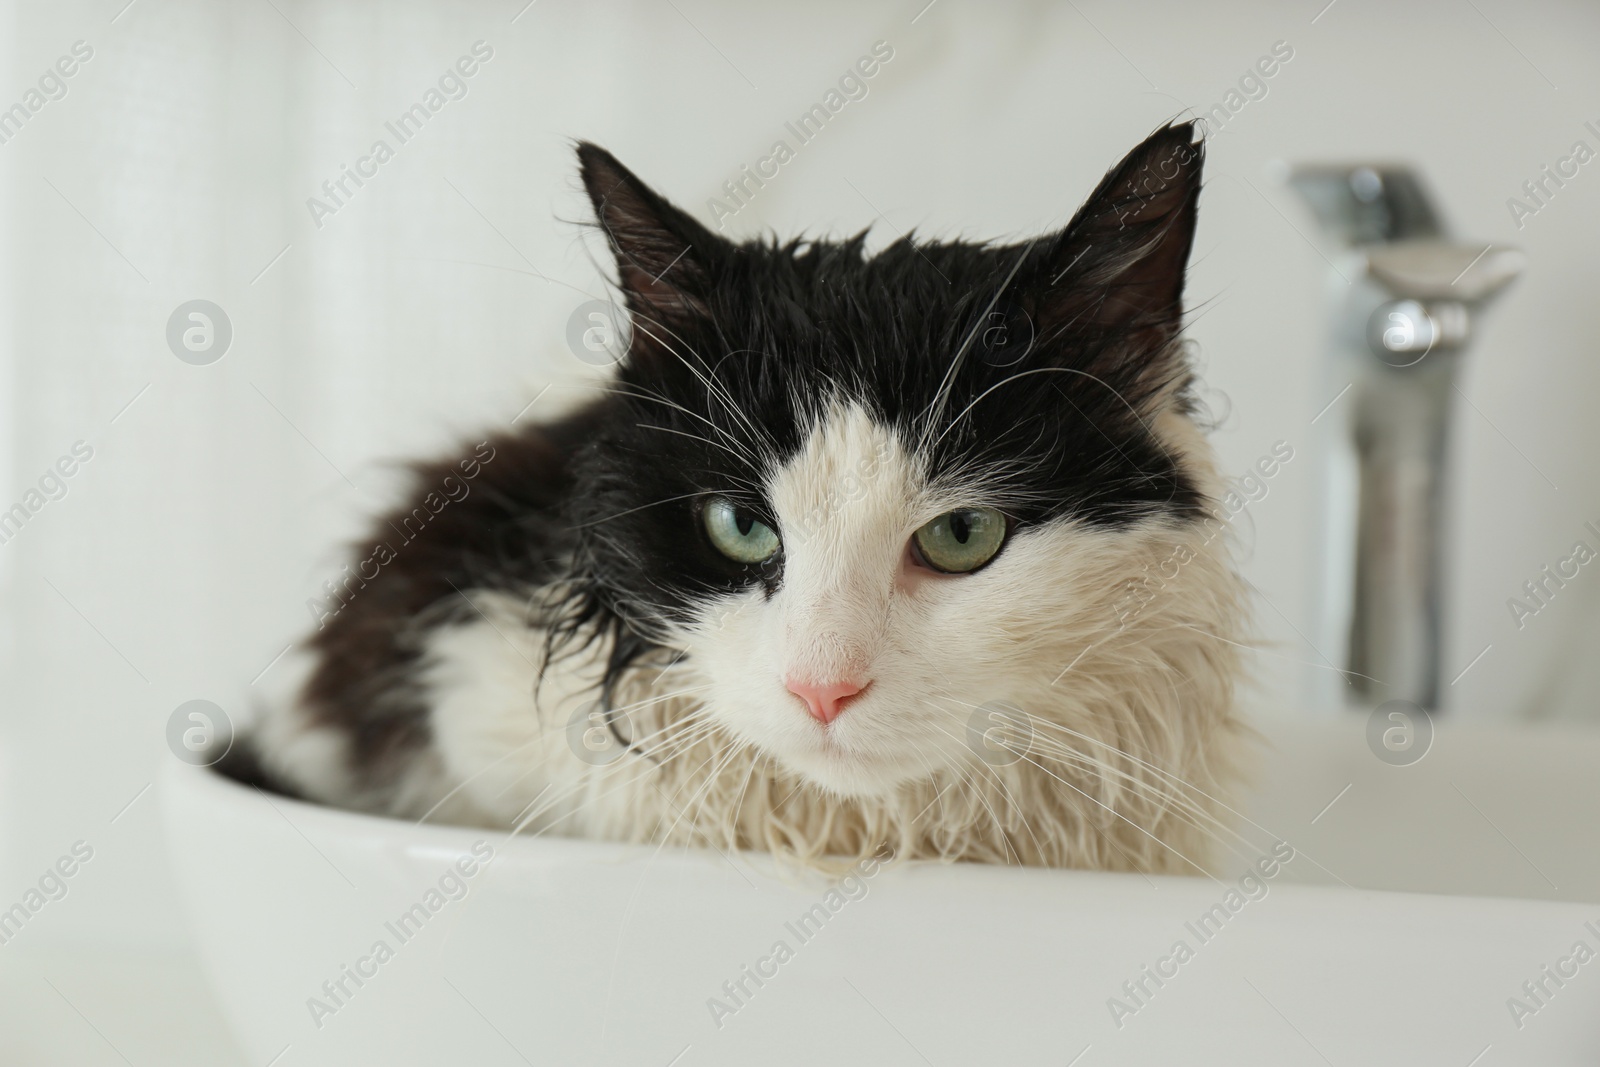 Photo of Cute wet cat in vessel sink indoors